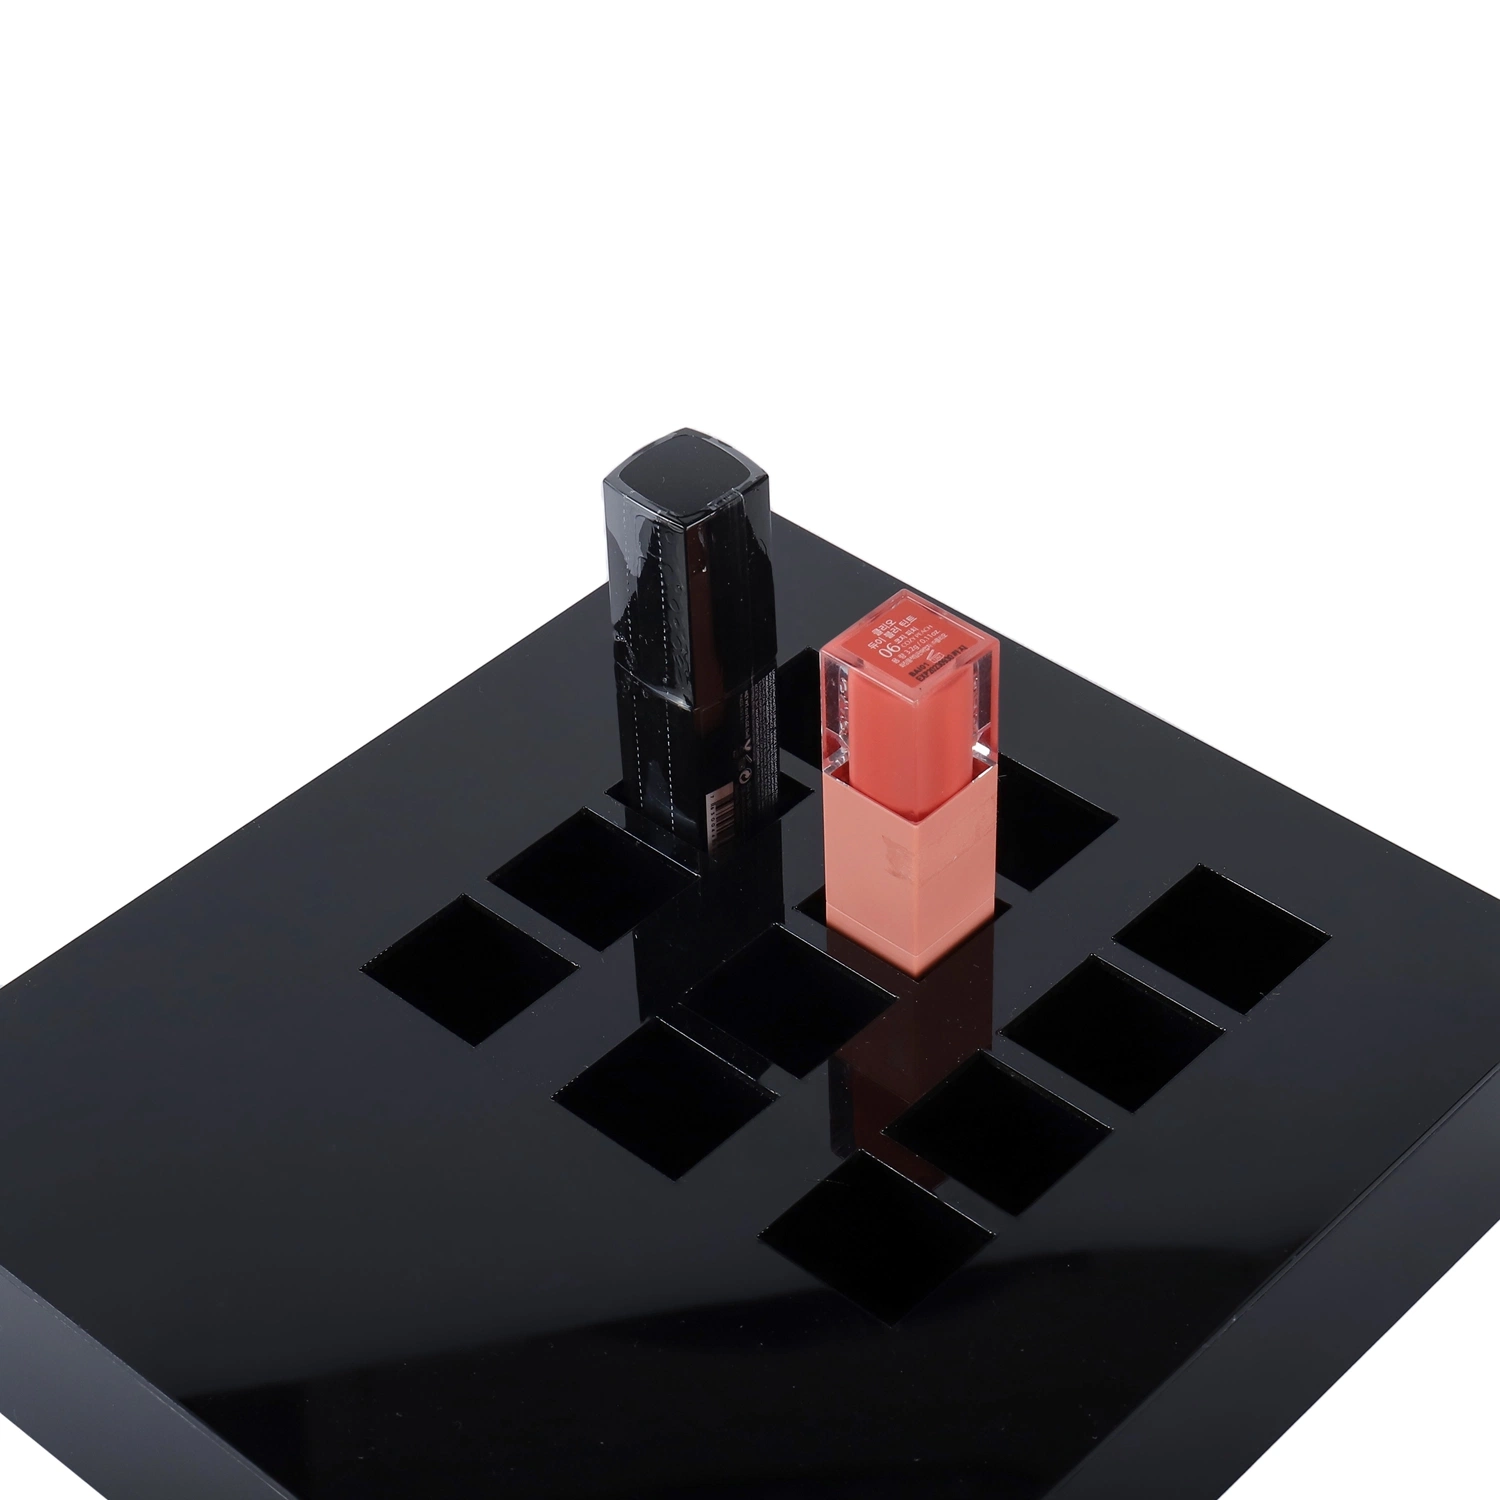 Benutzerdefinierte Acryl Kosmetik Make-Up-Box Lippenstift Halter Display Stand